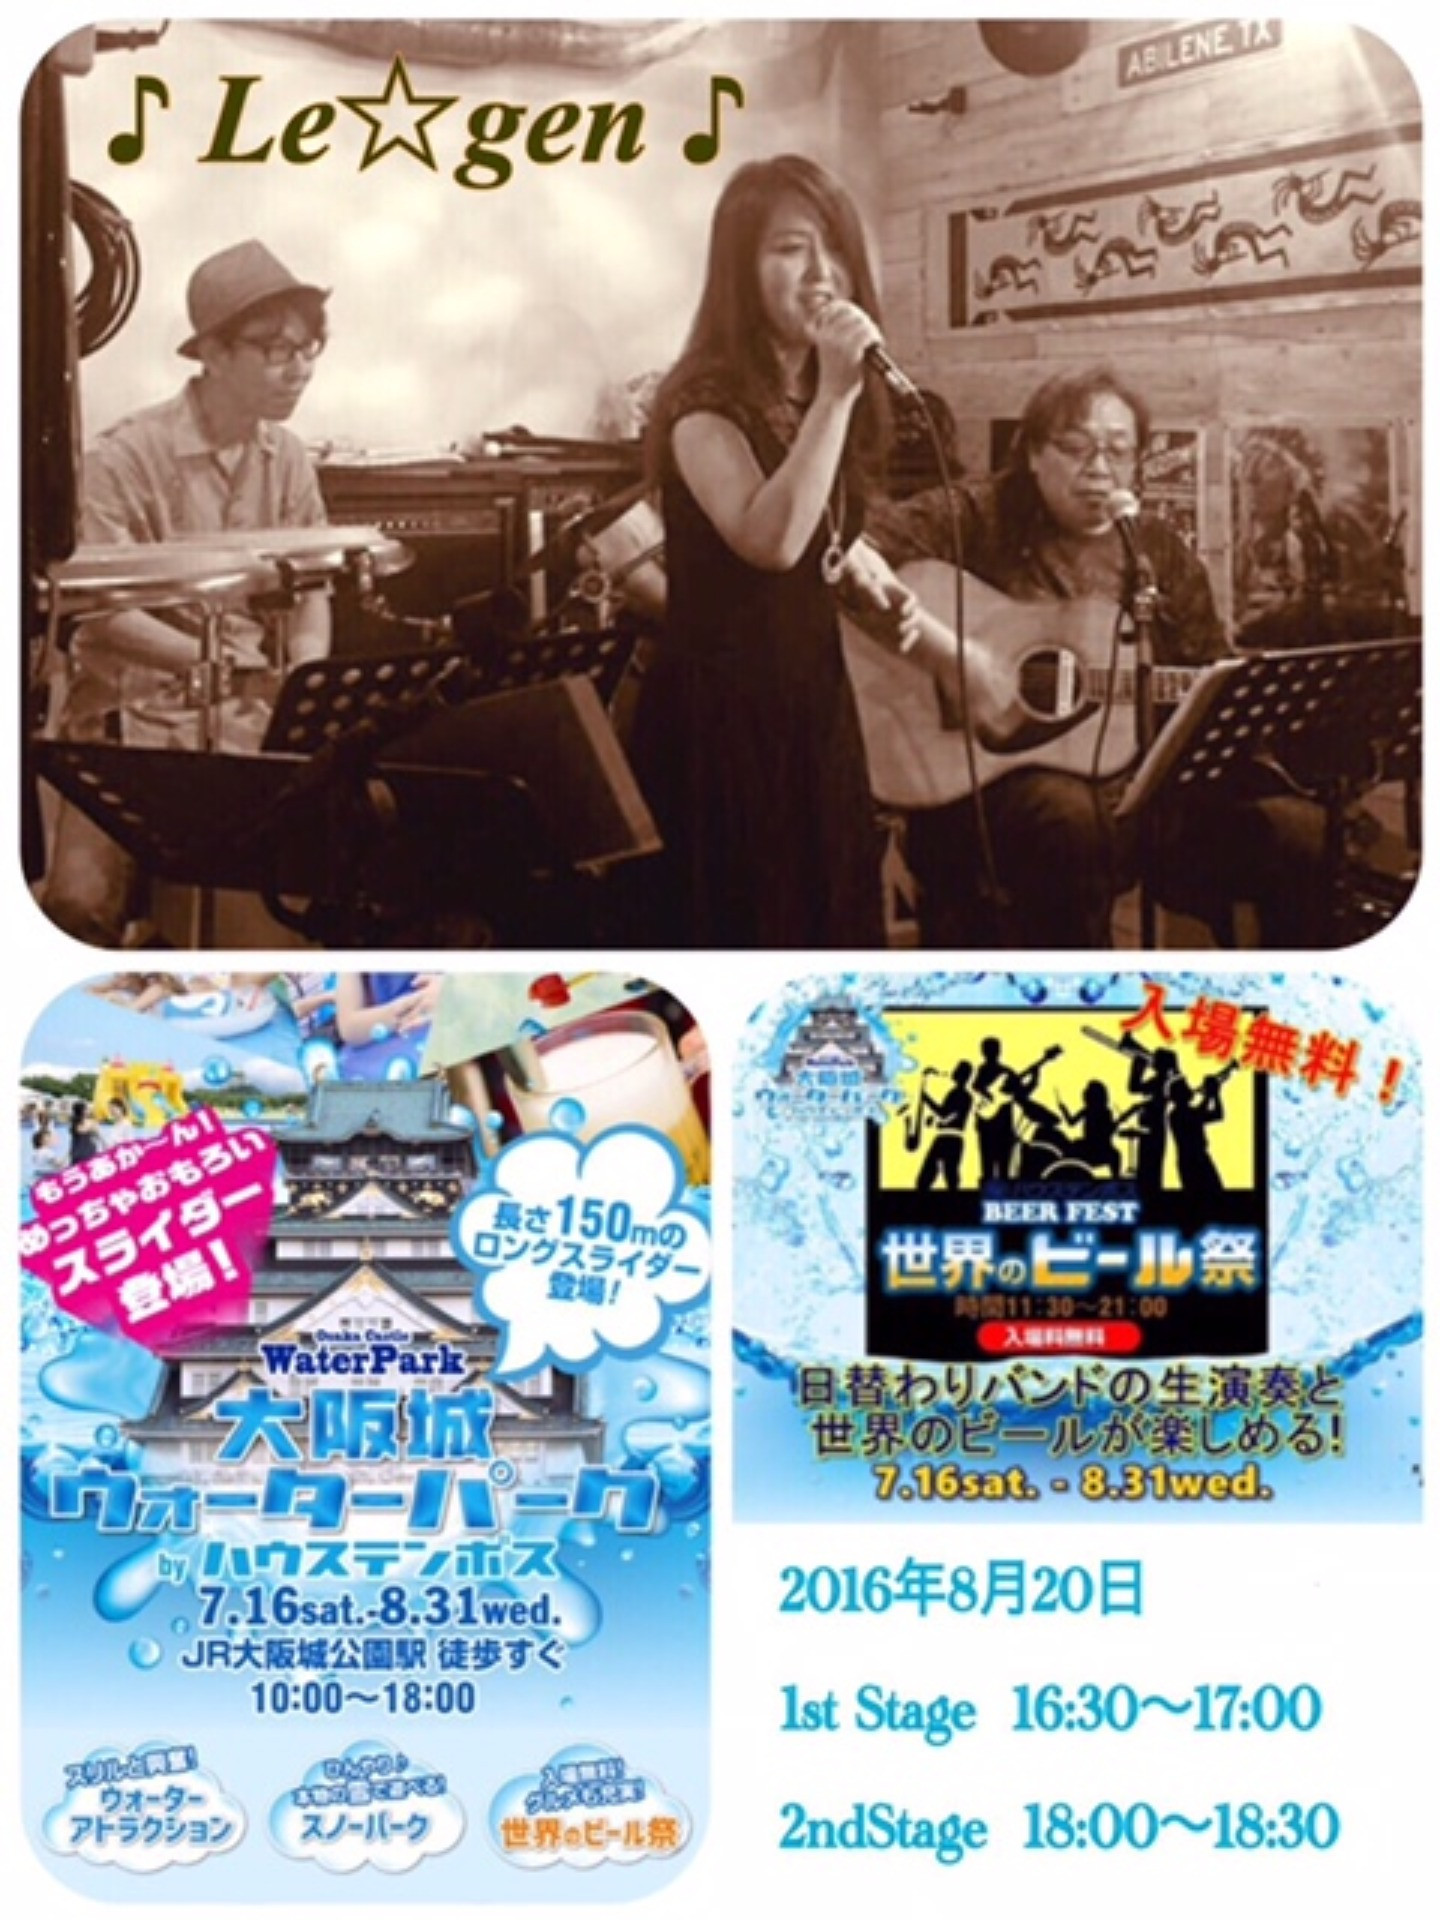 ♪Le☆gen♪ 大阪城ウォーターパーク 世界のビール祭ライブ出演します！